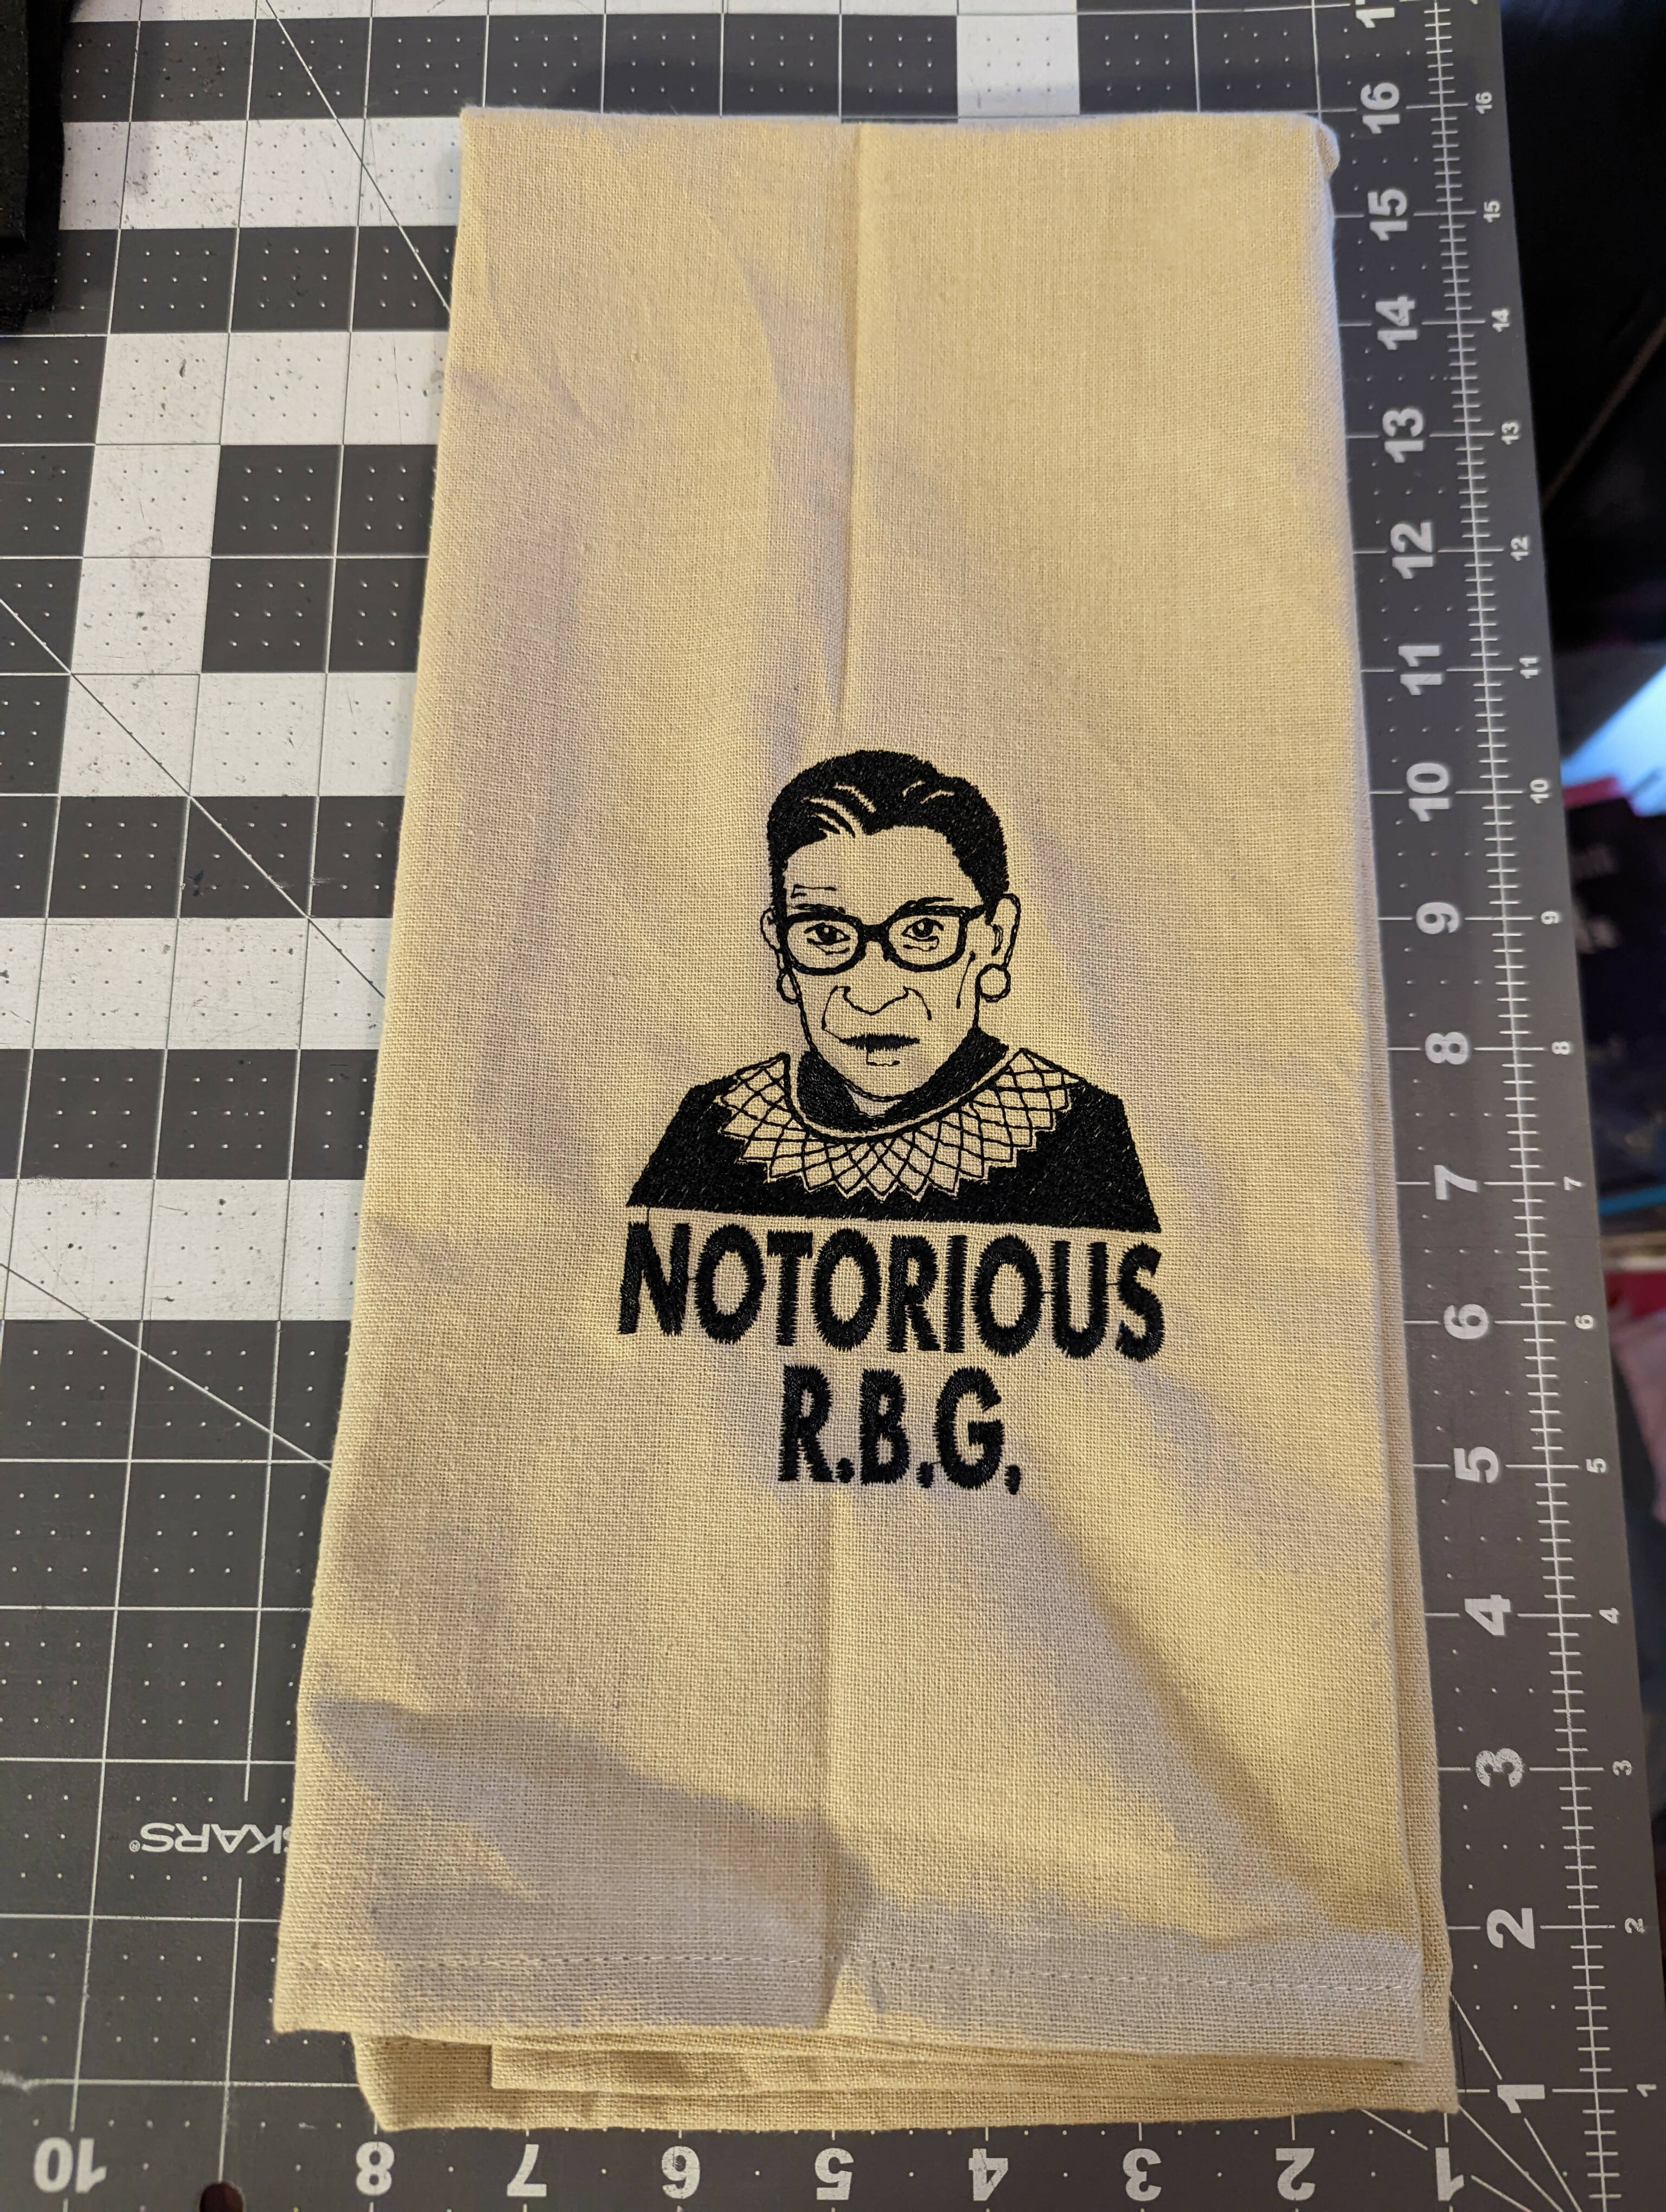 RBG Notorious Towel